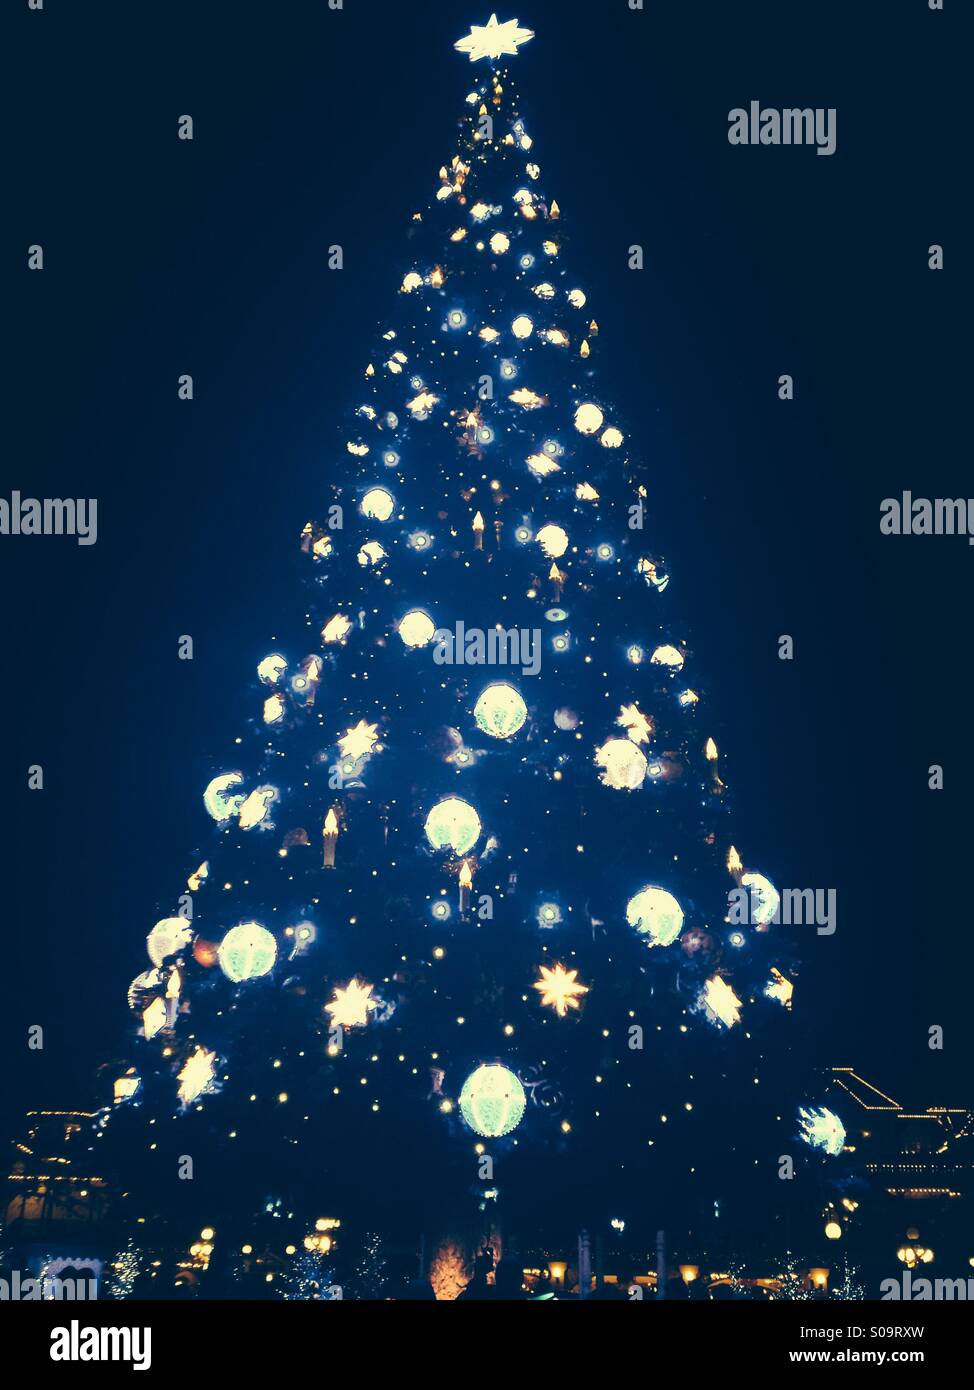 Disneyland Paris Christmas Tree Stock Photo Alamy